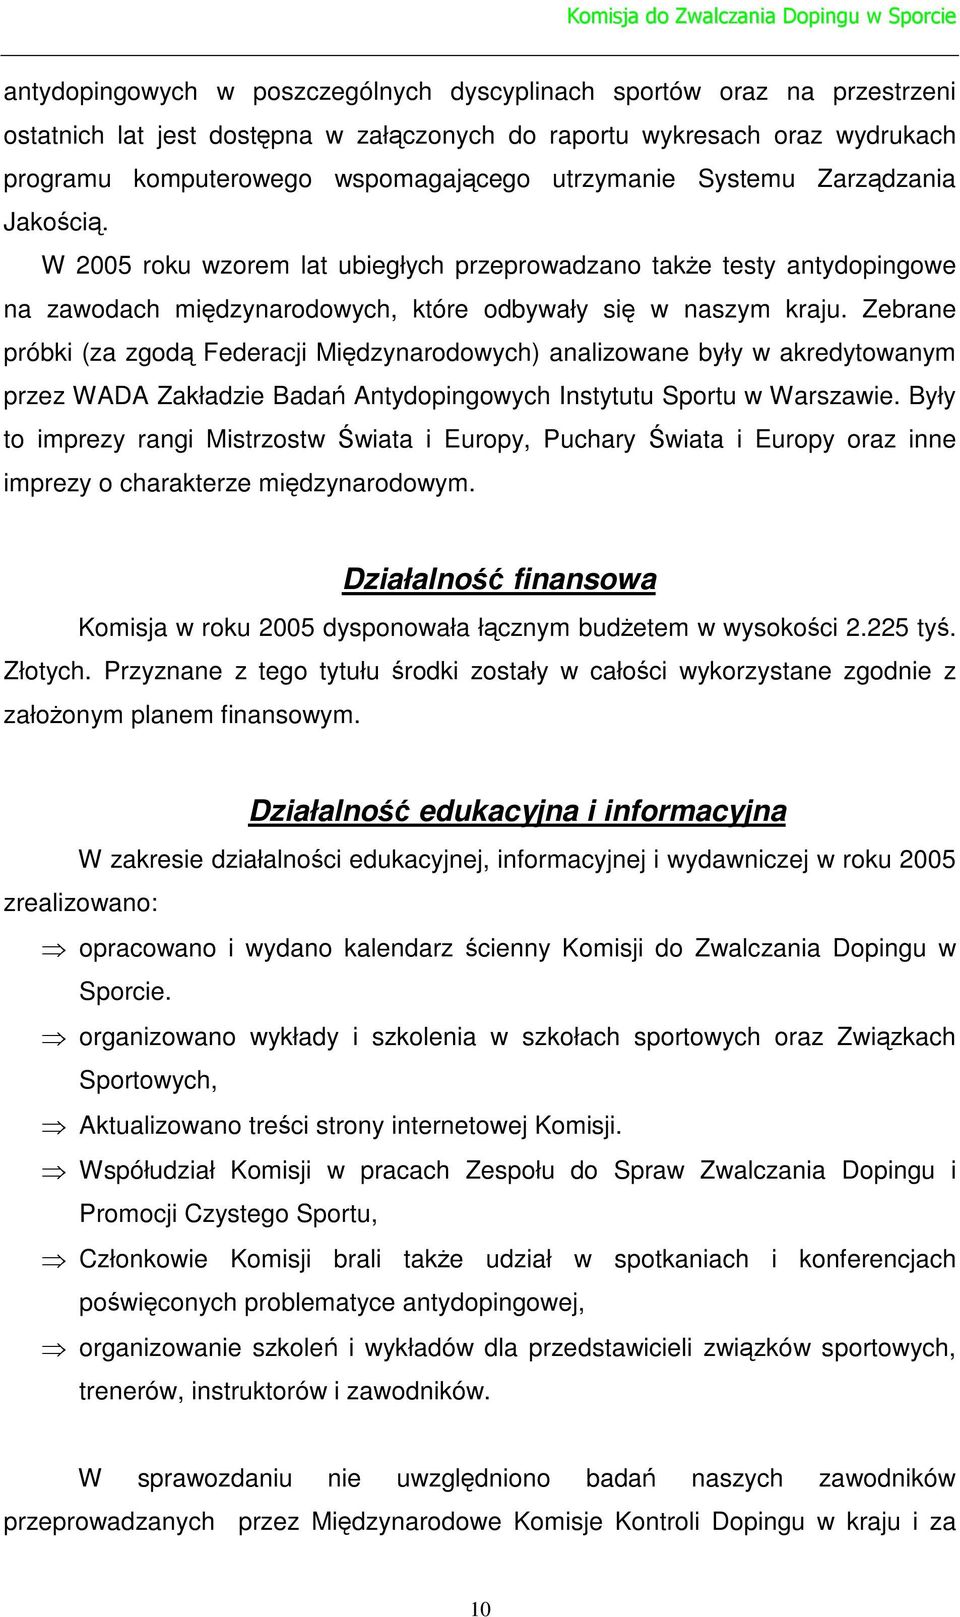 Zebrane próbki (za zgod Federacji Midzynarodowych) analizowane były w akredytowanym przez WADA Zakładzie Bada Antydopingowych Instytutu Sportu w Warszawie.